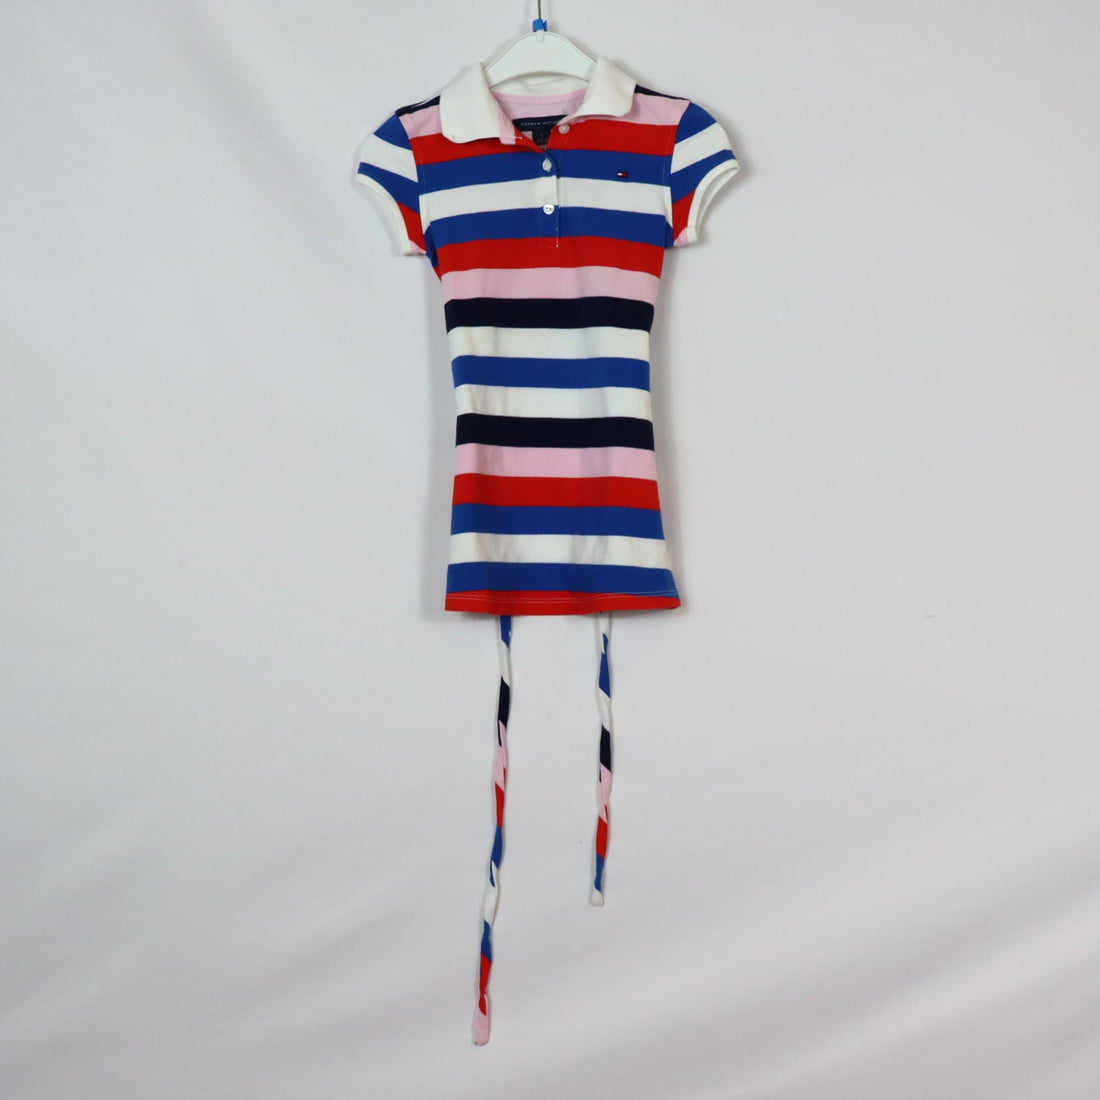 Kleid - Tommy Hilfiger - 98 - rot/weiß/blau - mit Gürtel - gestreift - sehr guter Zustand